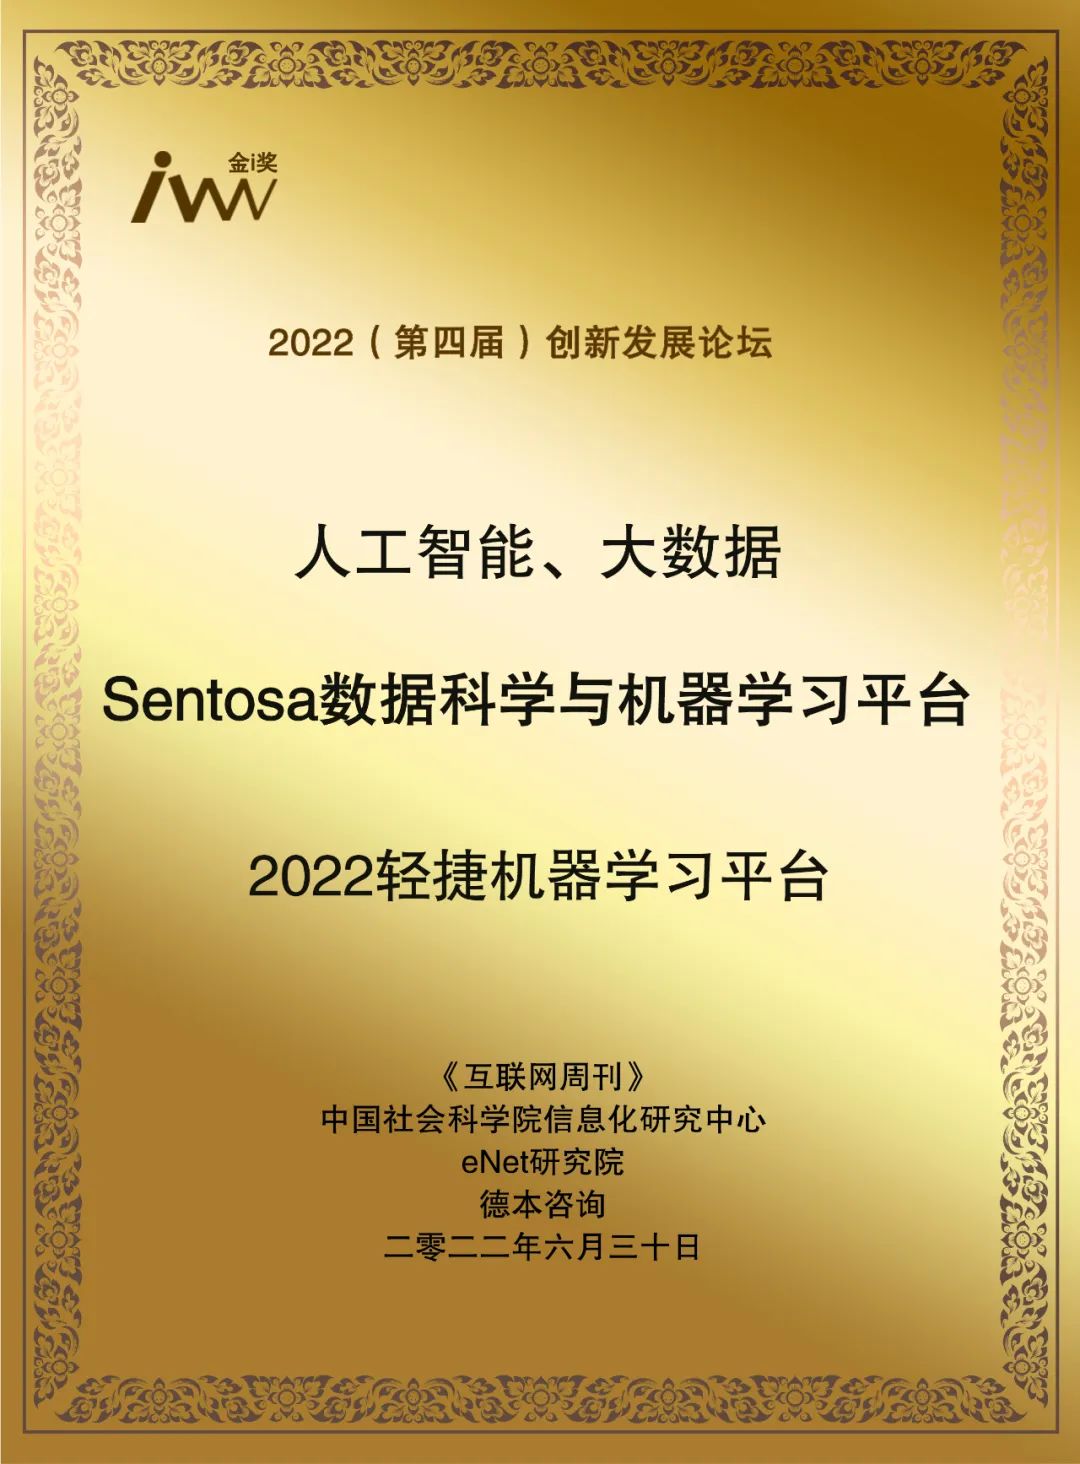 9170官方金沙入口会员登录基础软件产品Sentosa再获殊荣